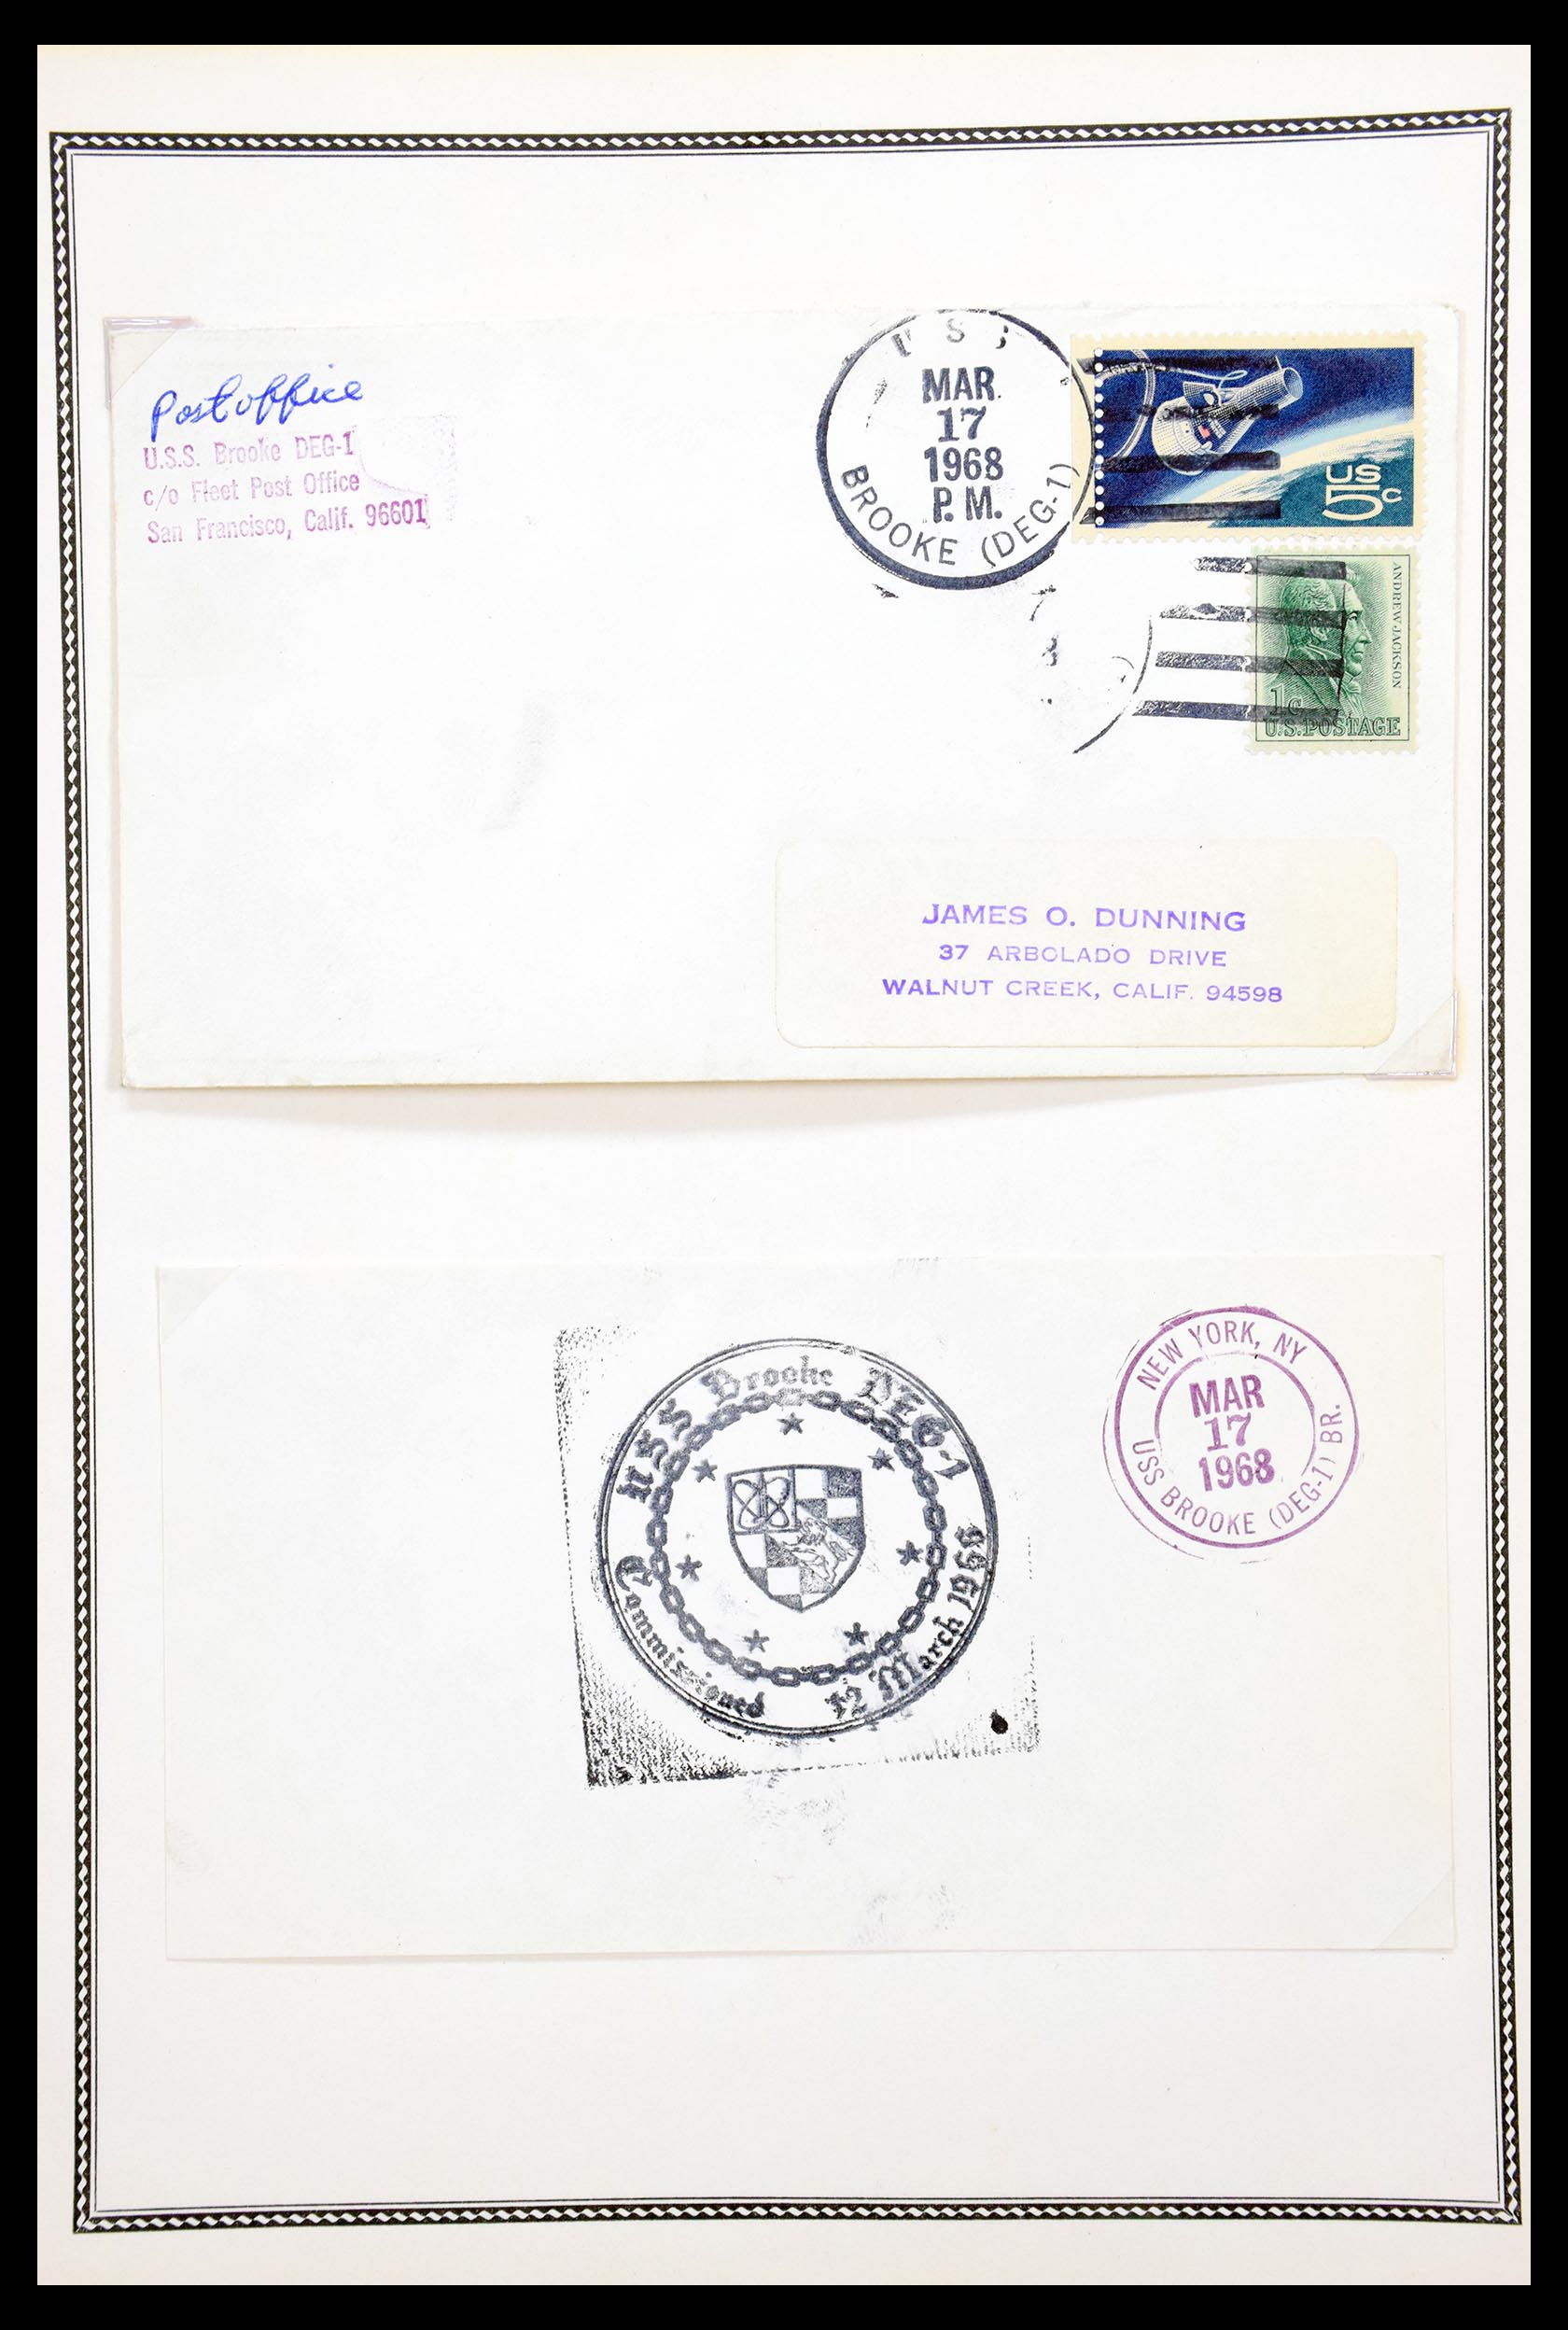 30341 090 - 30341 USA scheepspost brieven 1930-1970.